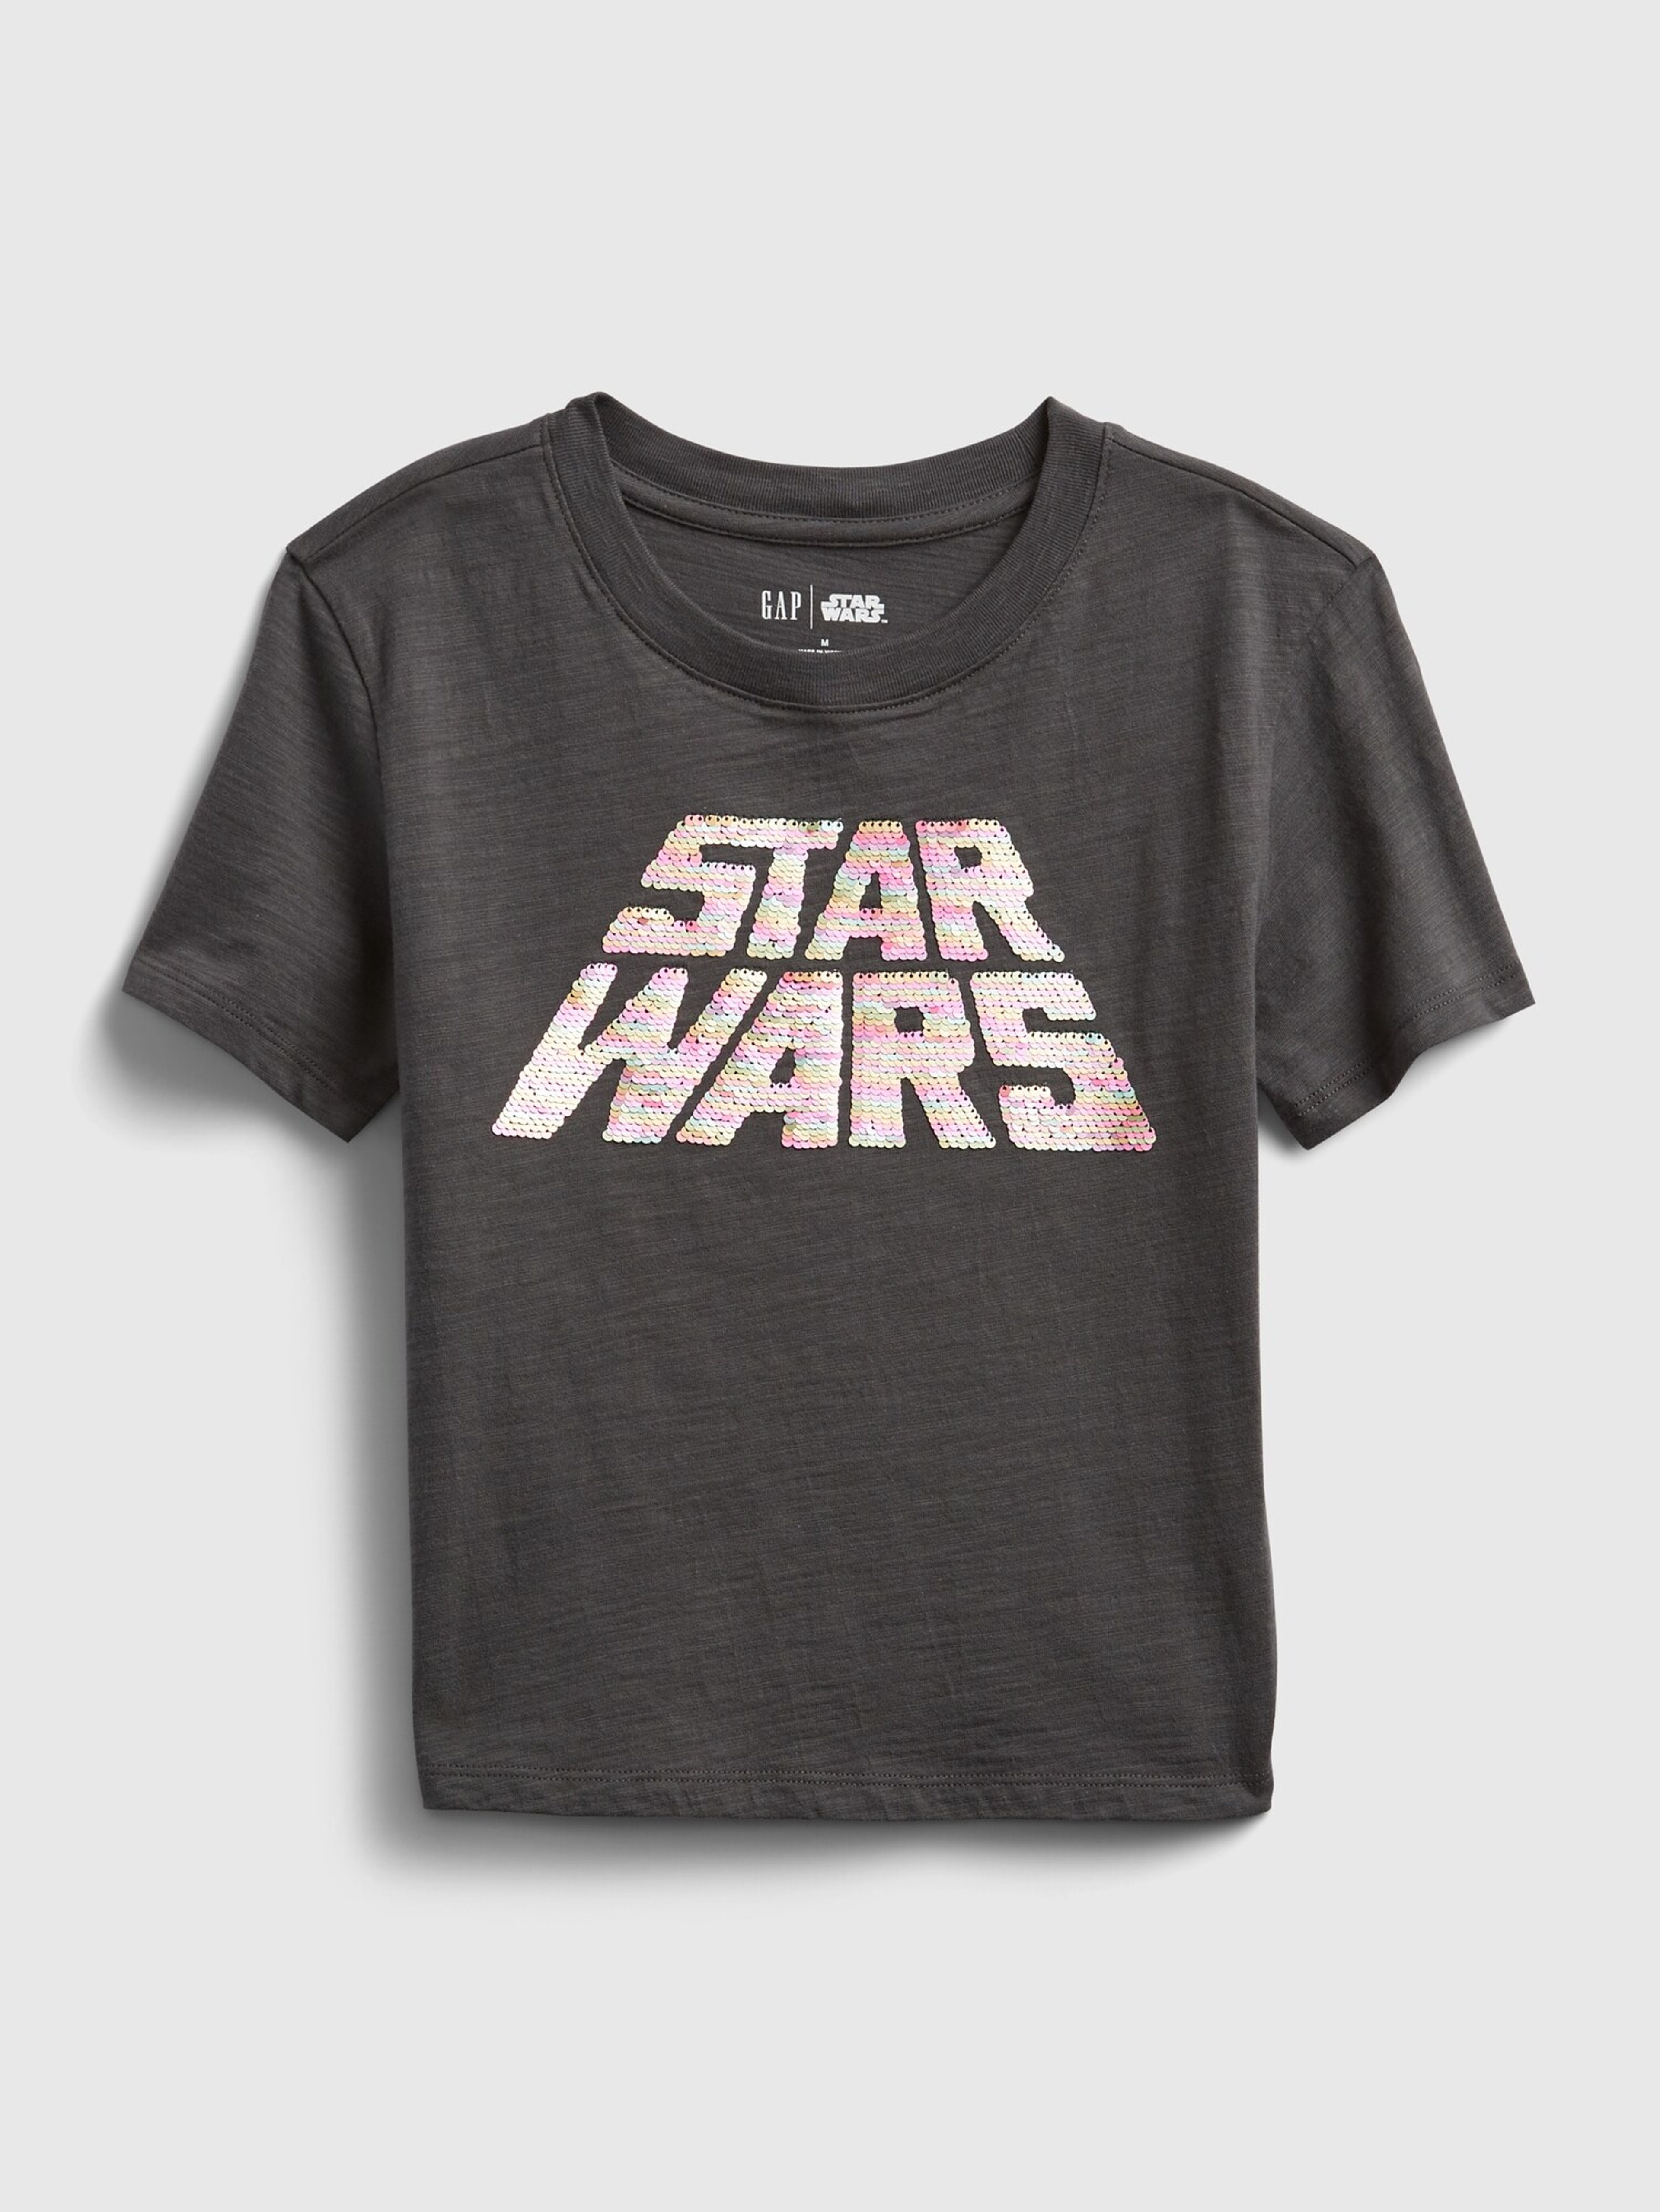 Detské tričko GAP & Star Wars